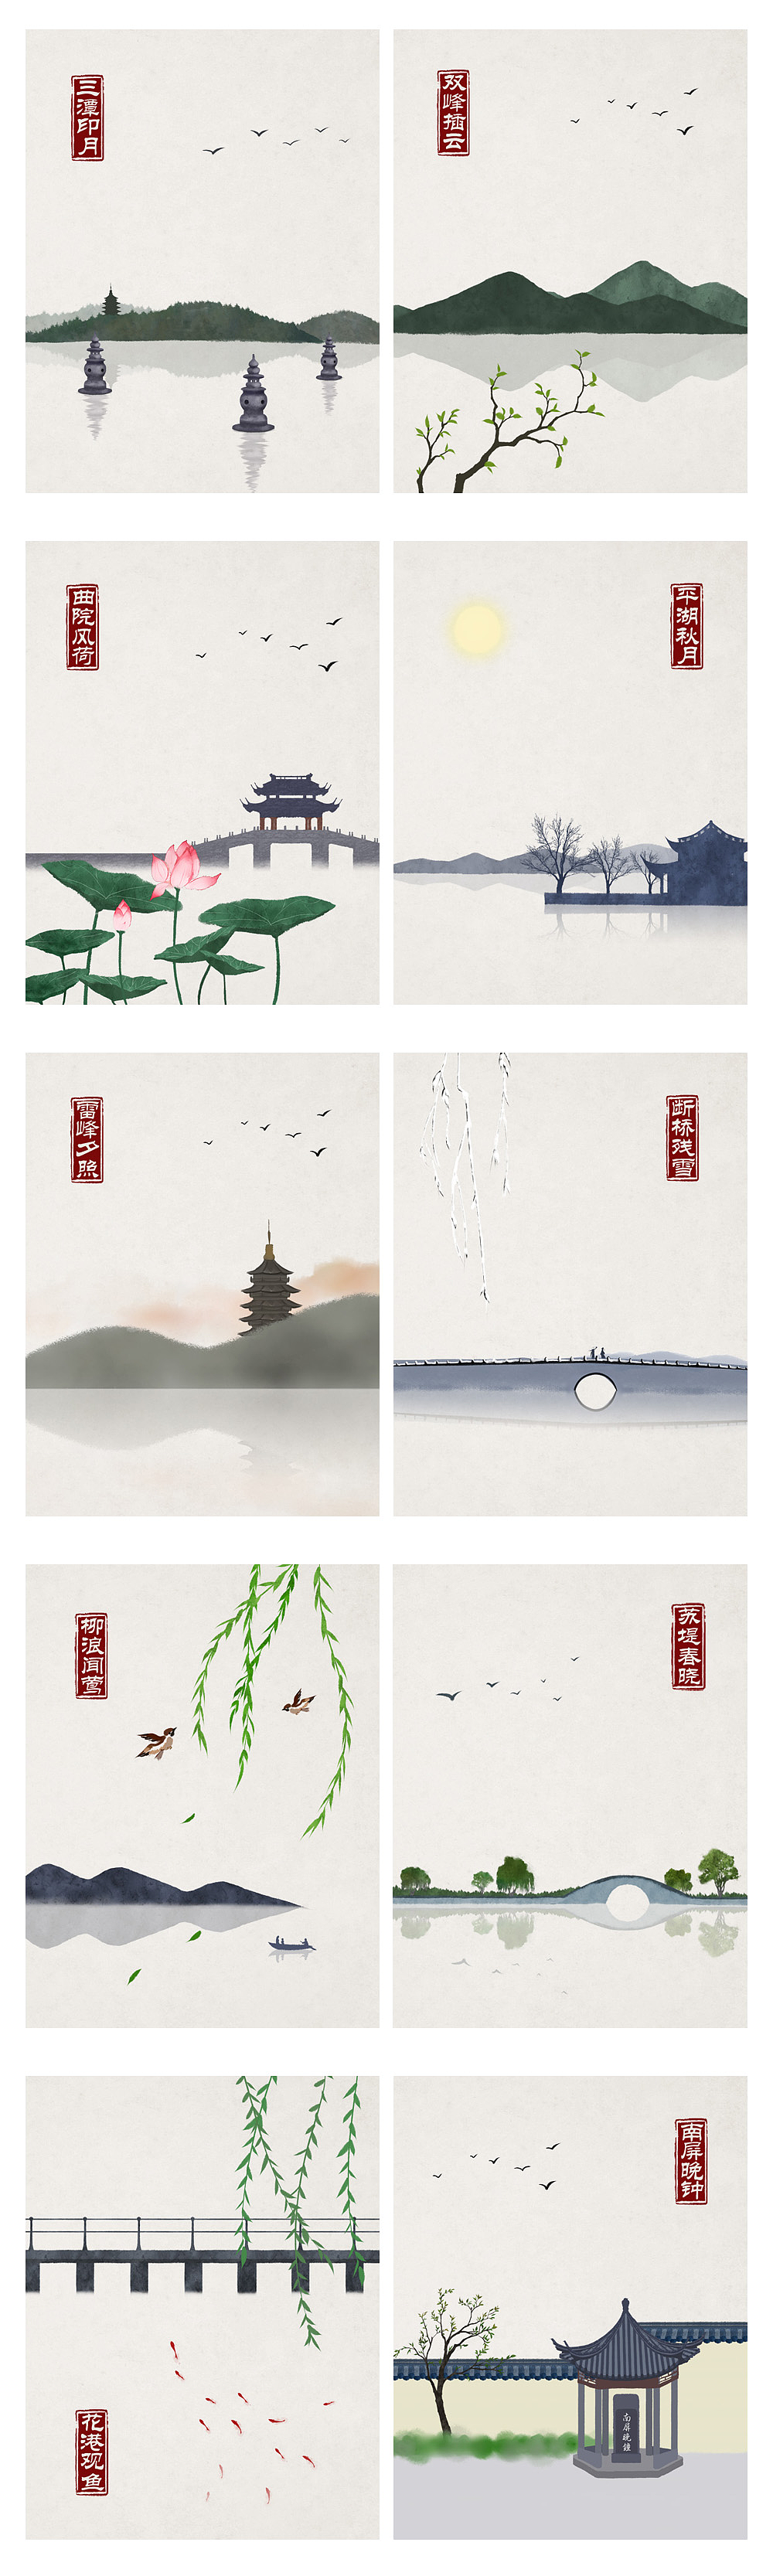 水墨中国风——竹间系列·杭州印象西湖十景